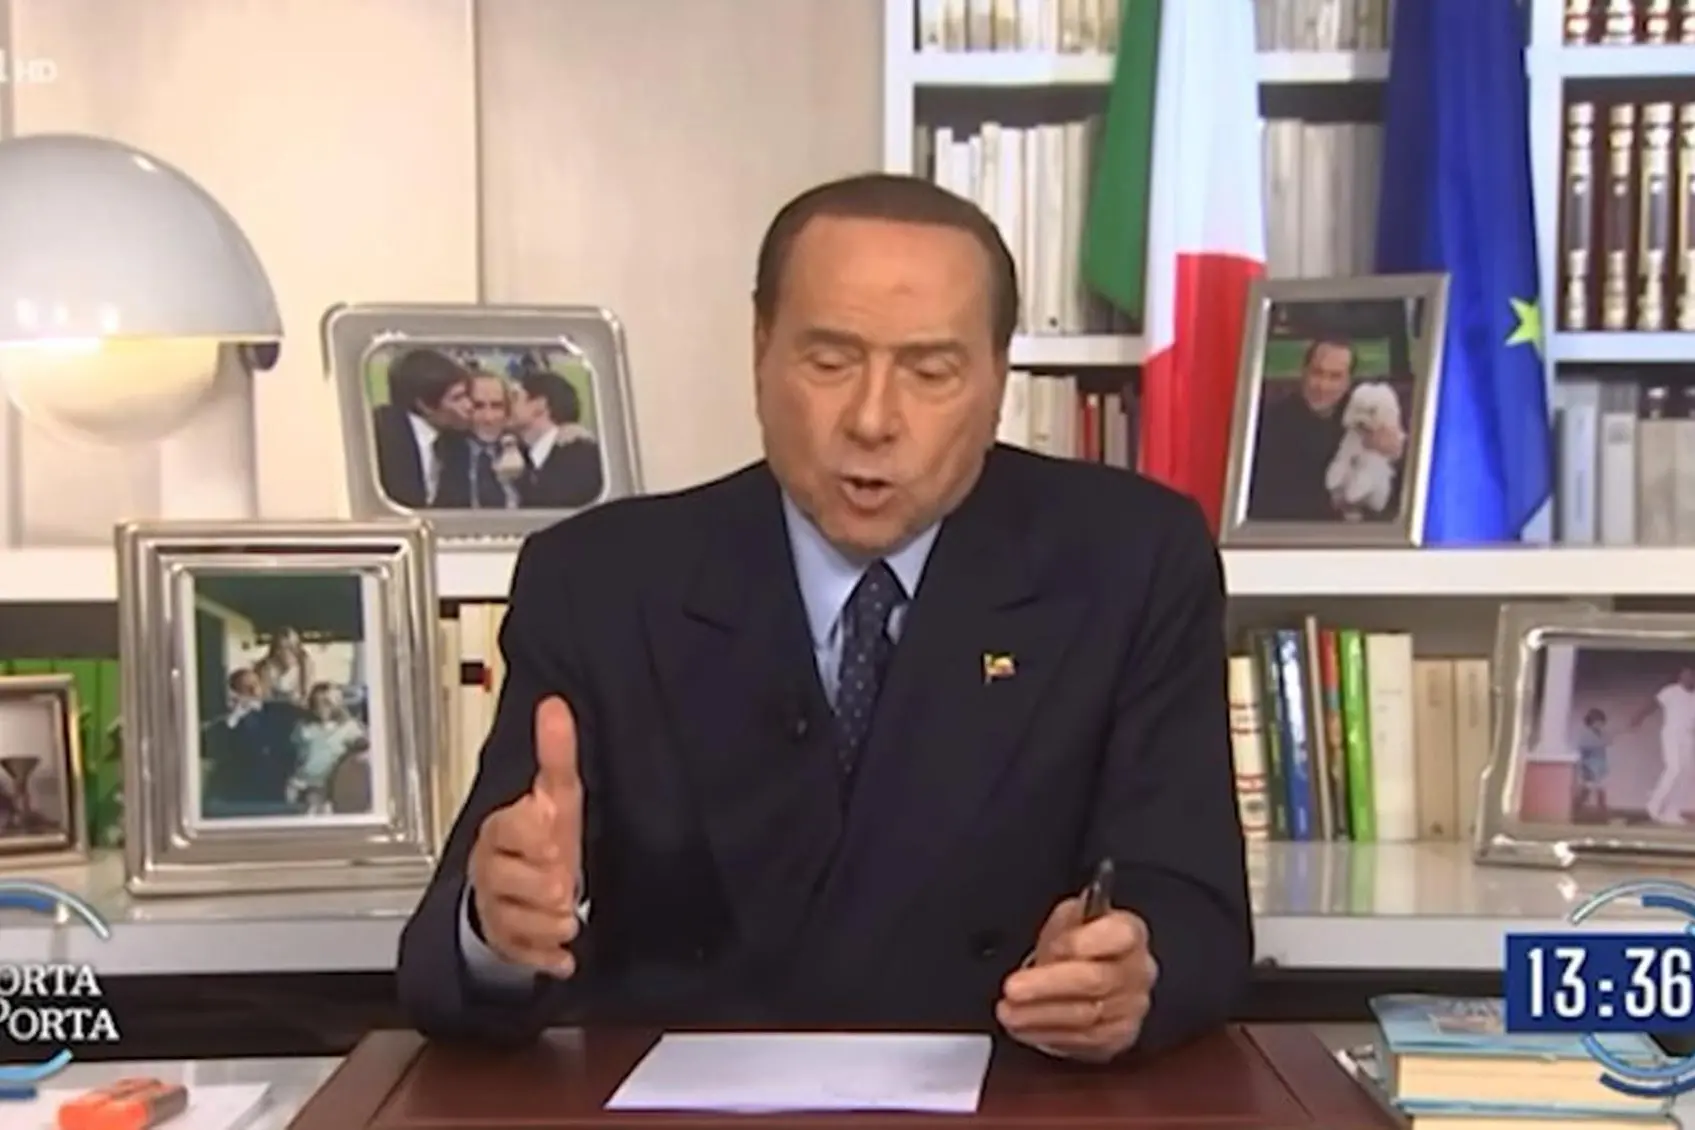 Silvio Berlusconi at Porta a Porta (Ansa)